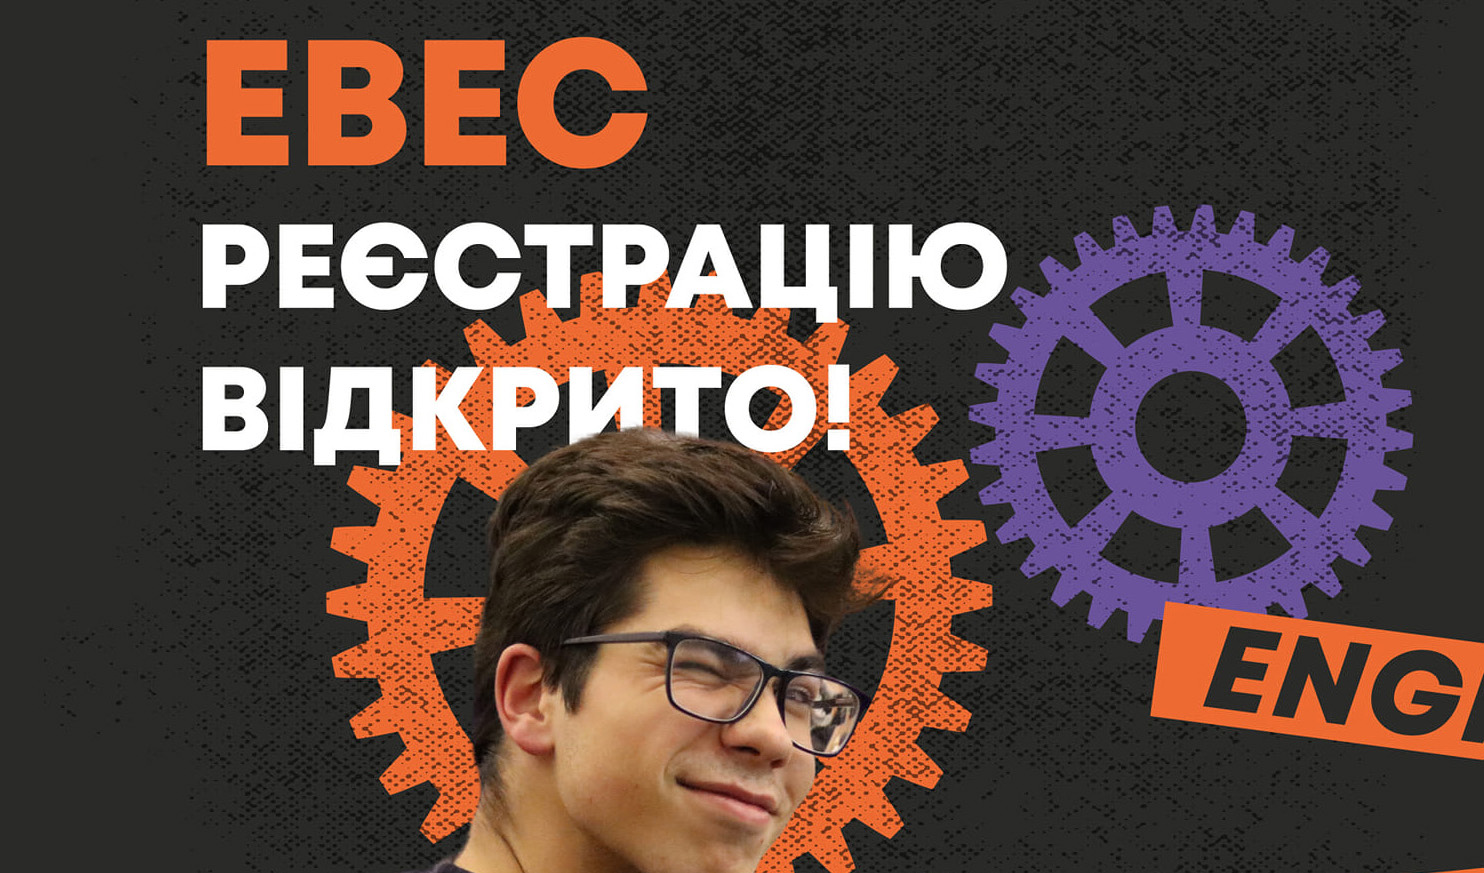 Заставка до реєстрації на EBEC Lviv 2021